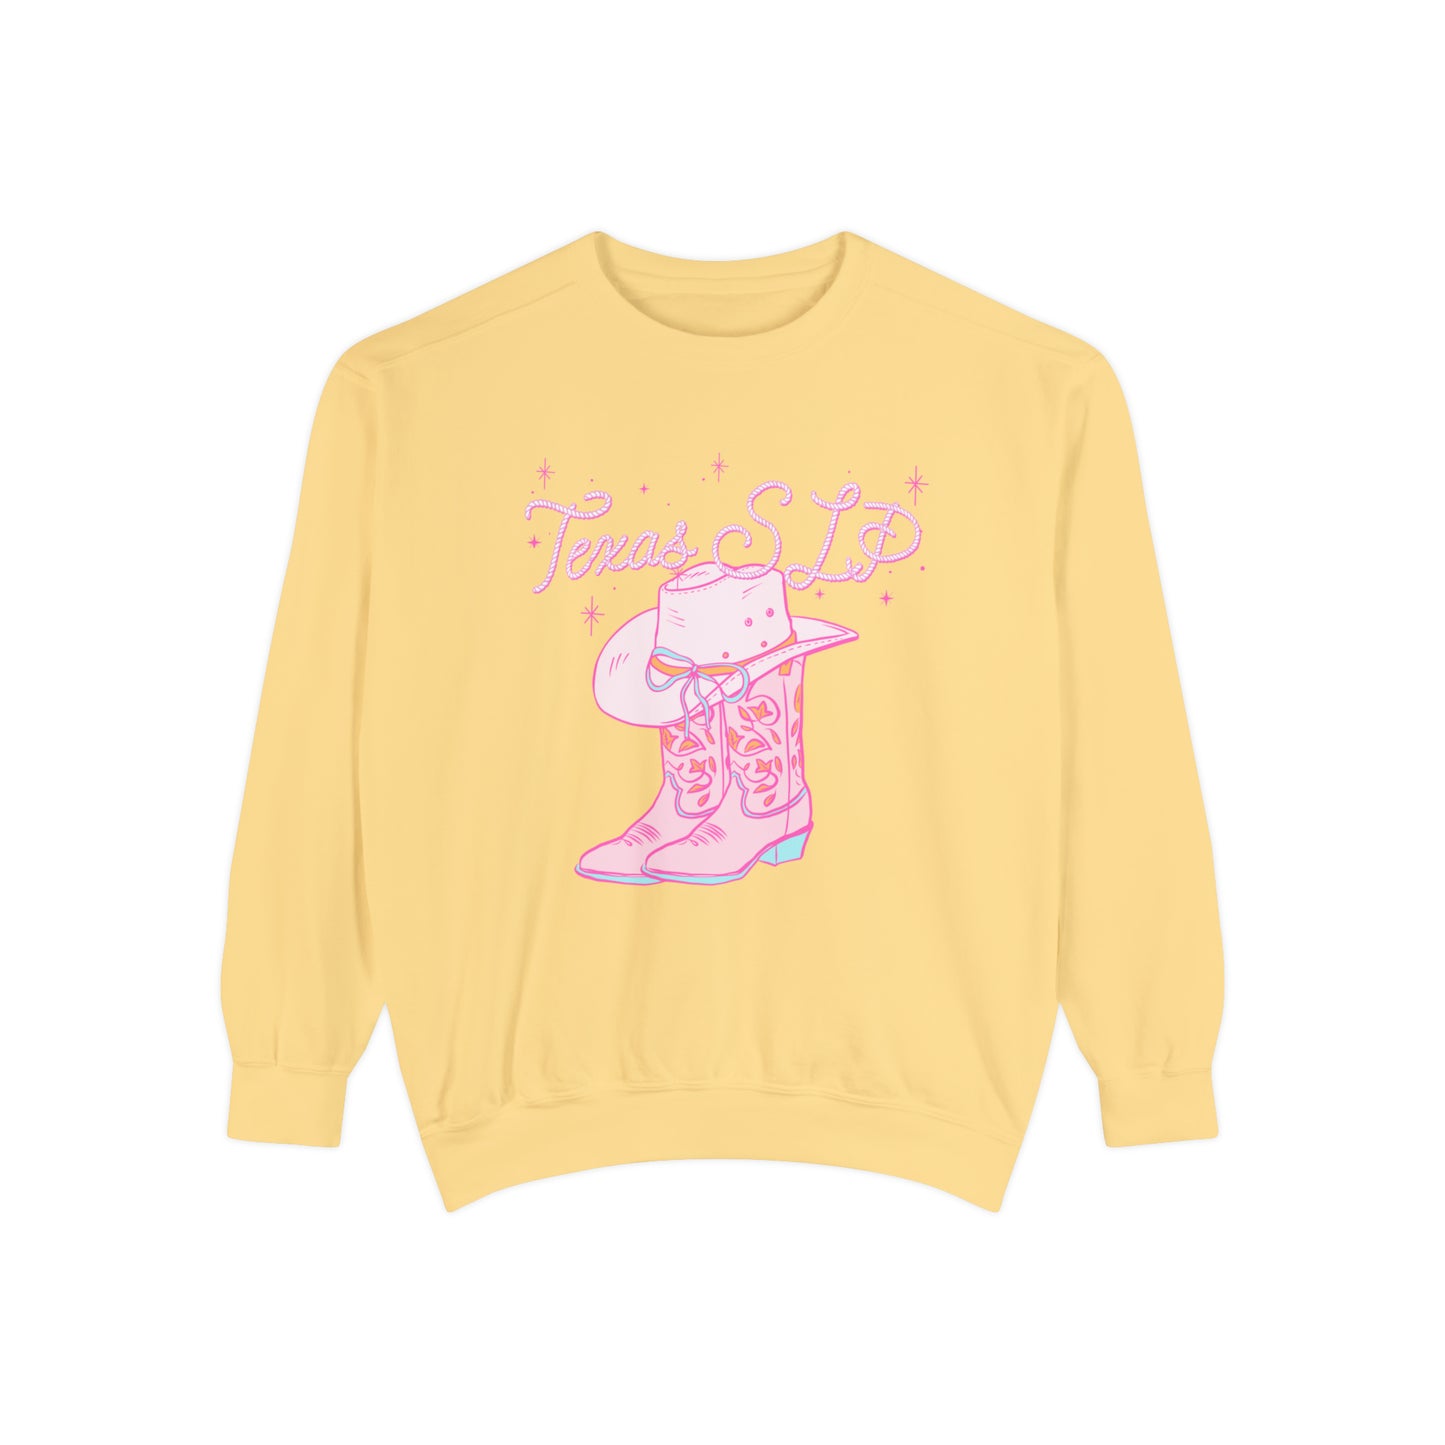 Texas SLP Comfort Colors Sweatshirt